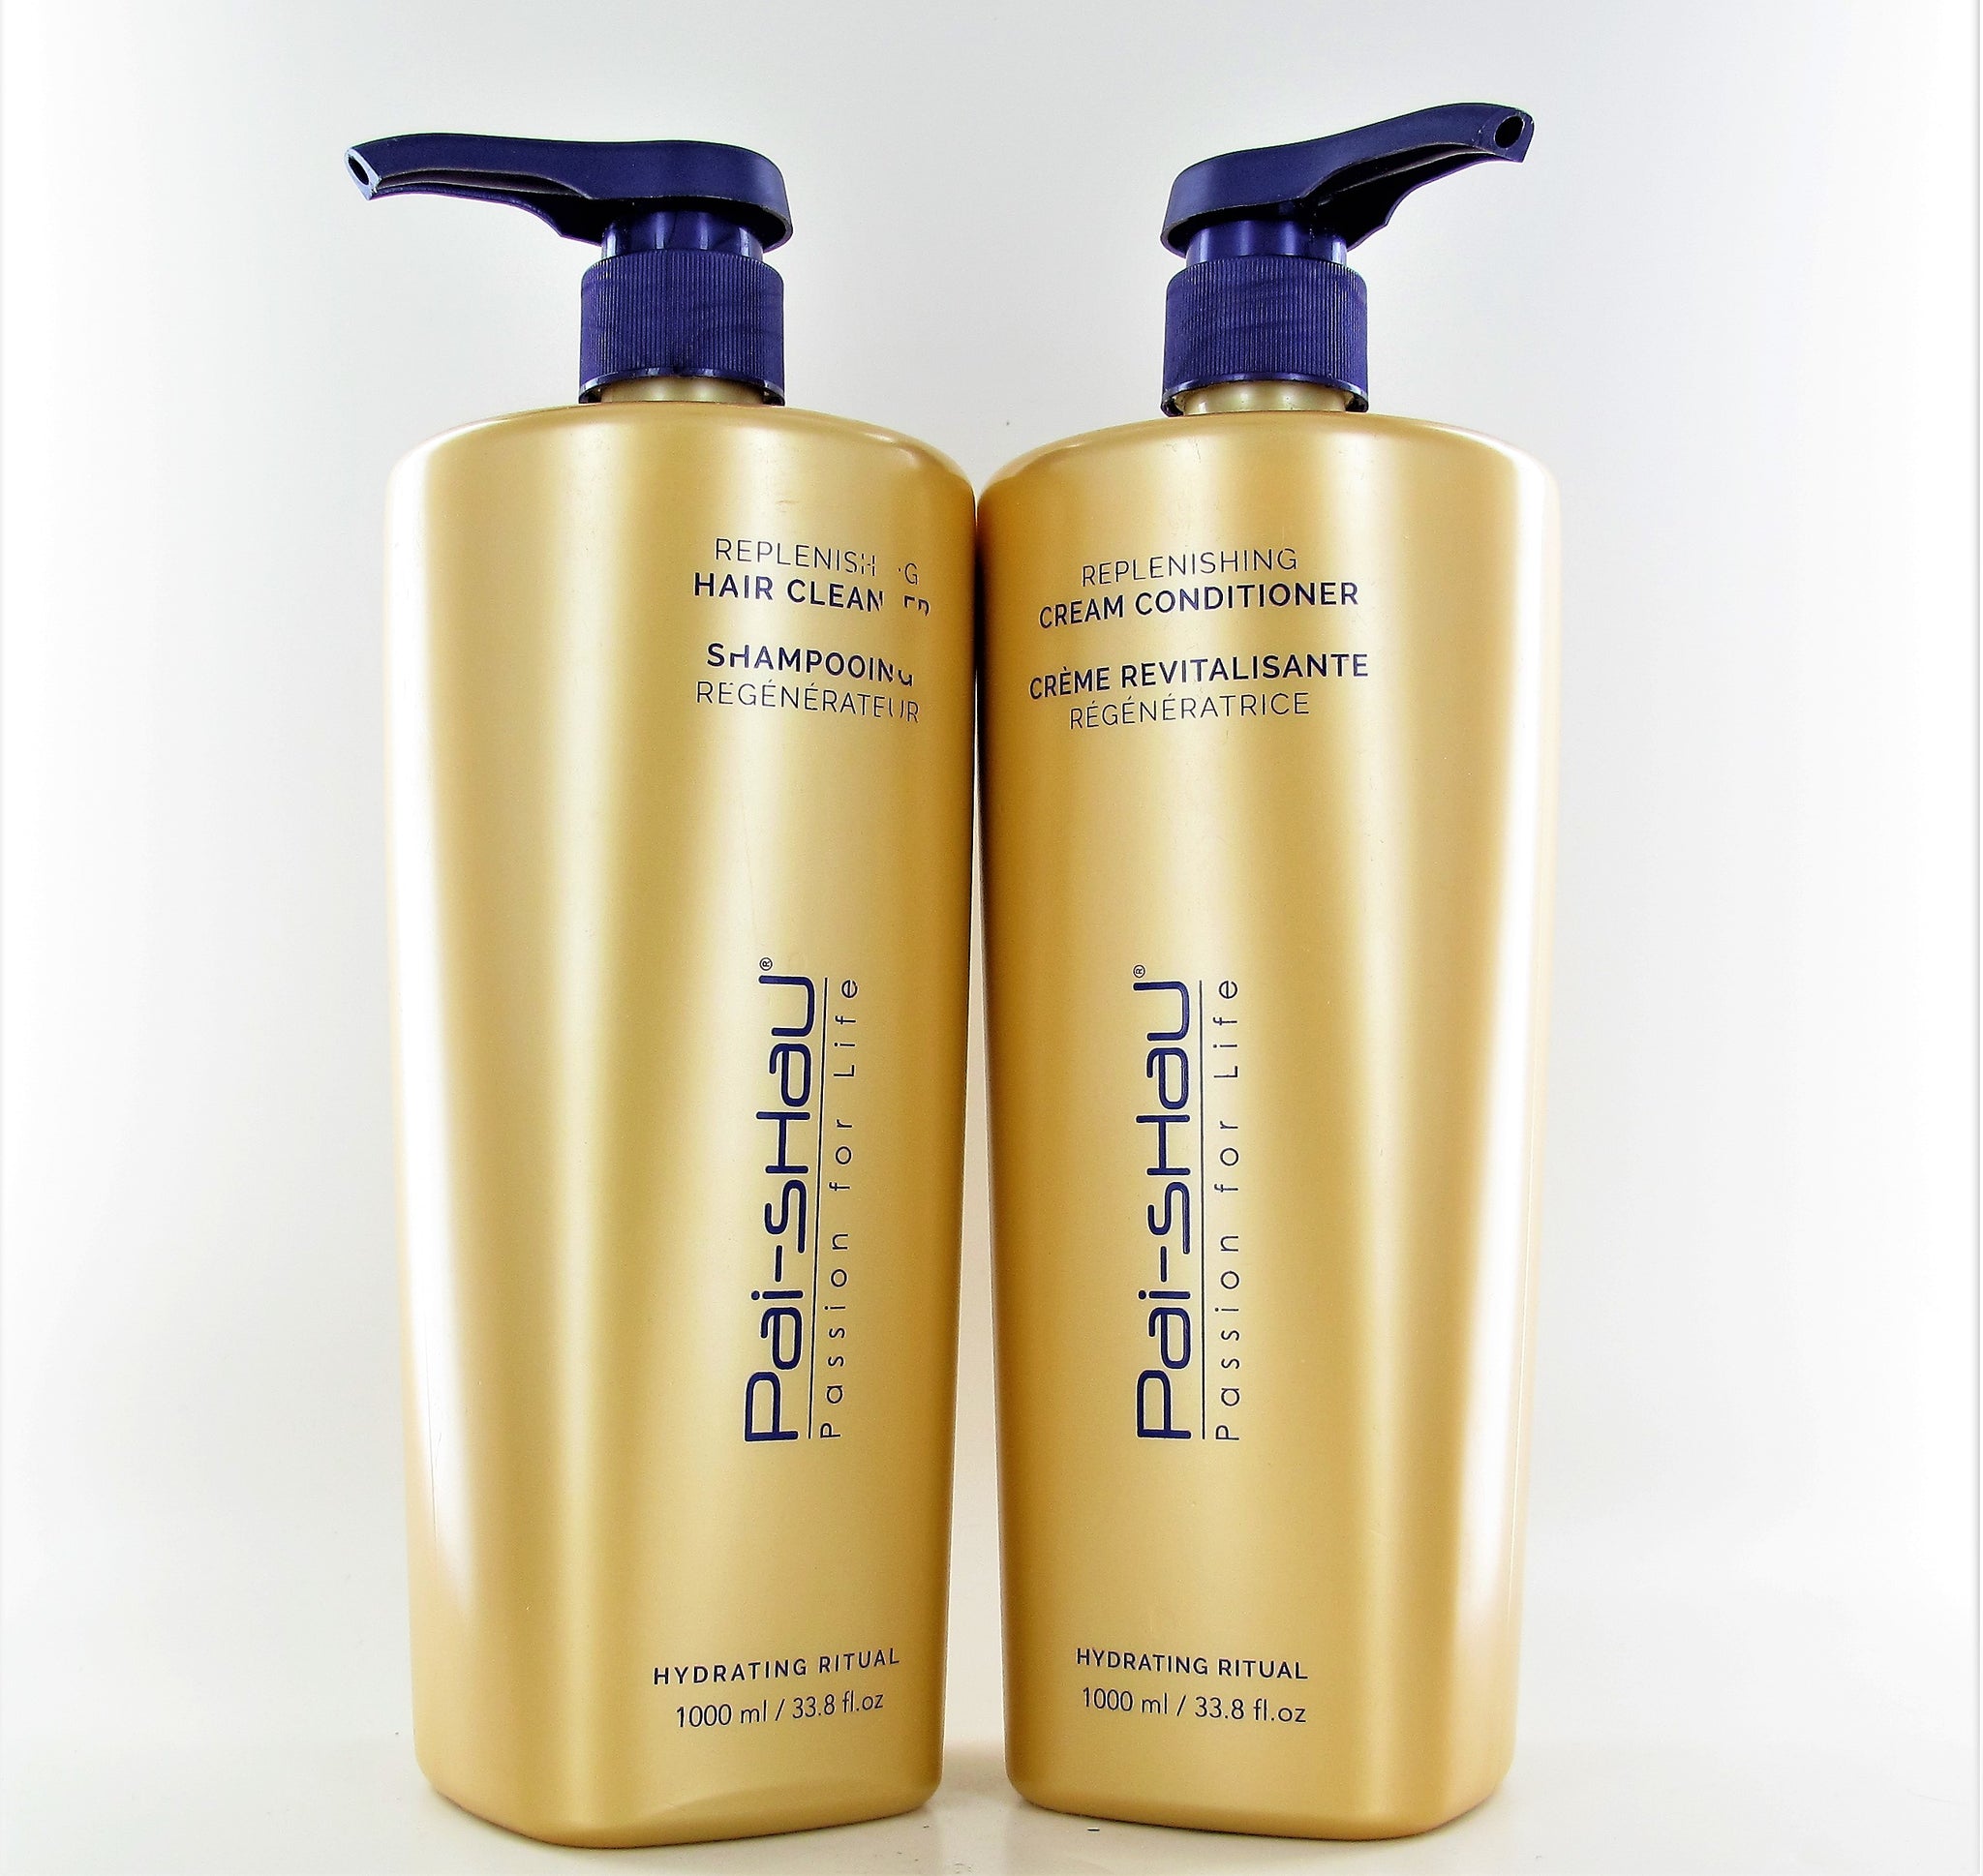 Pai-Shau Replenishing Hair Cleanser & Cream Conditioner Liter Duo